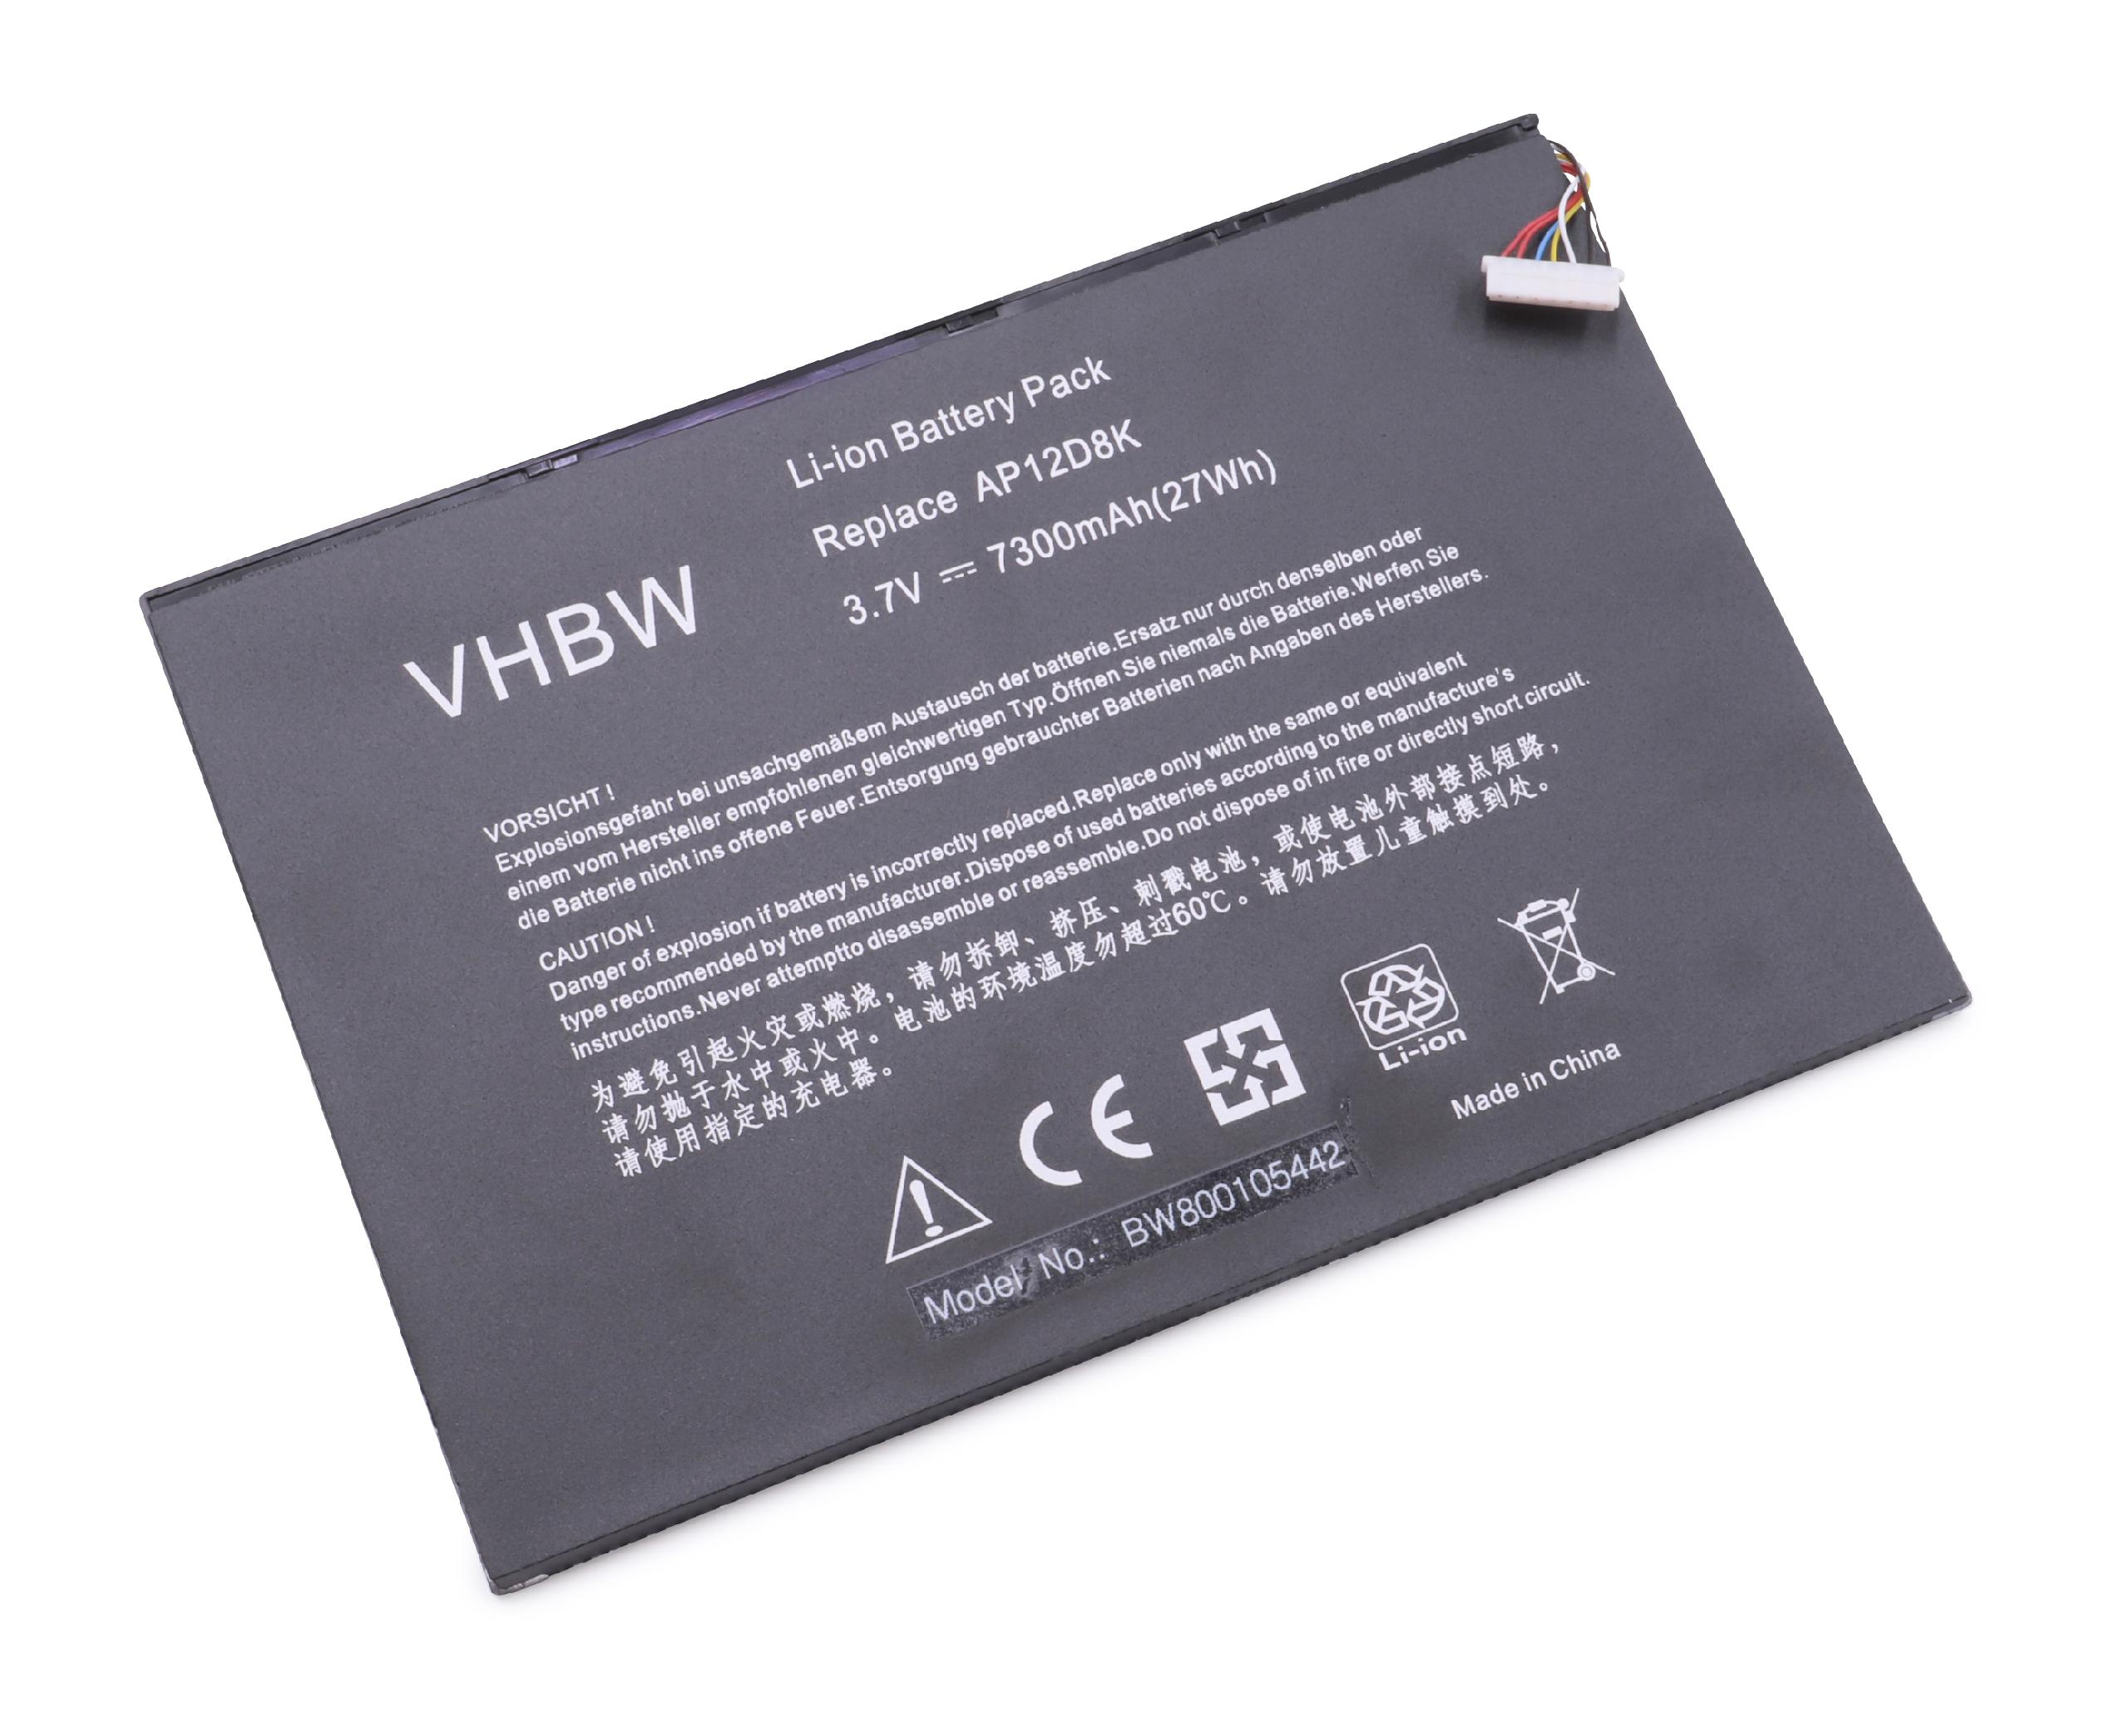 VHBW Ersatz für 7300 1ICP4/83/103-2, Tablet, für 3.7 AP12D8K Akku Li-Polymer - Acer Volt